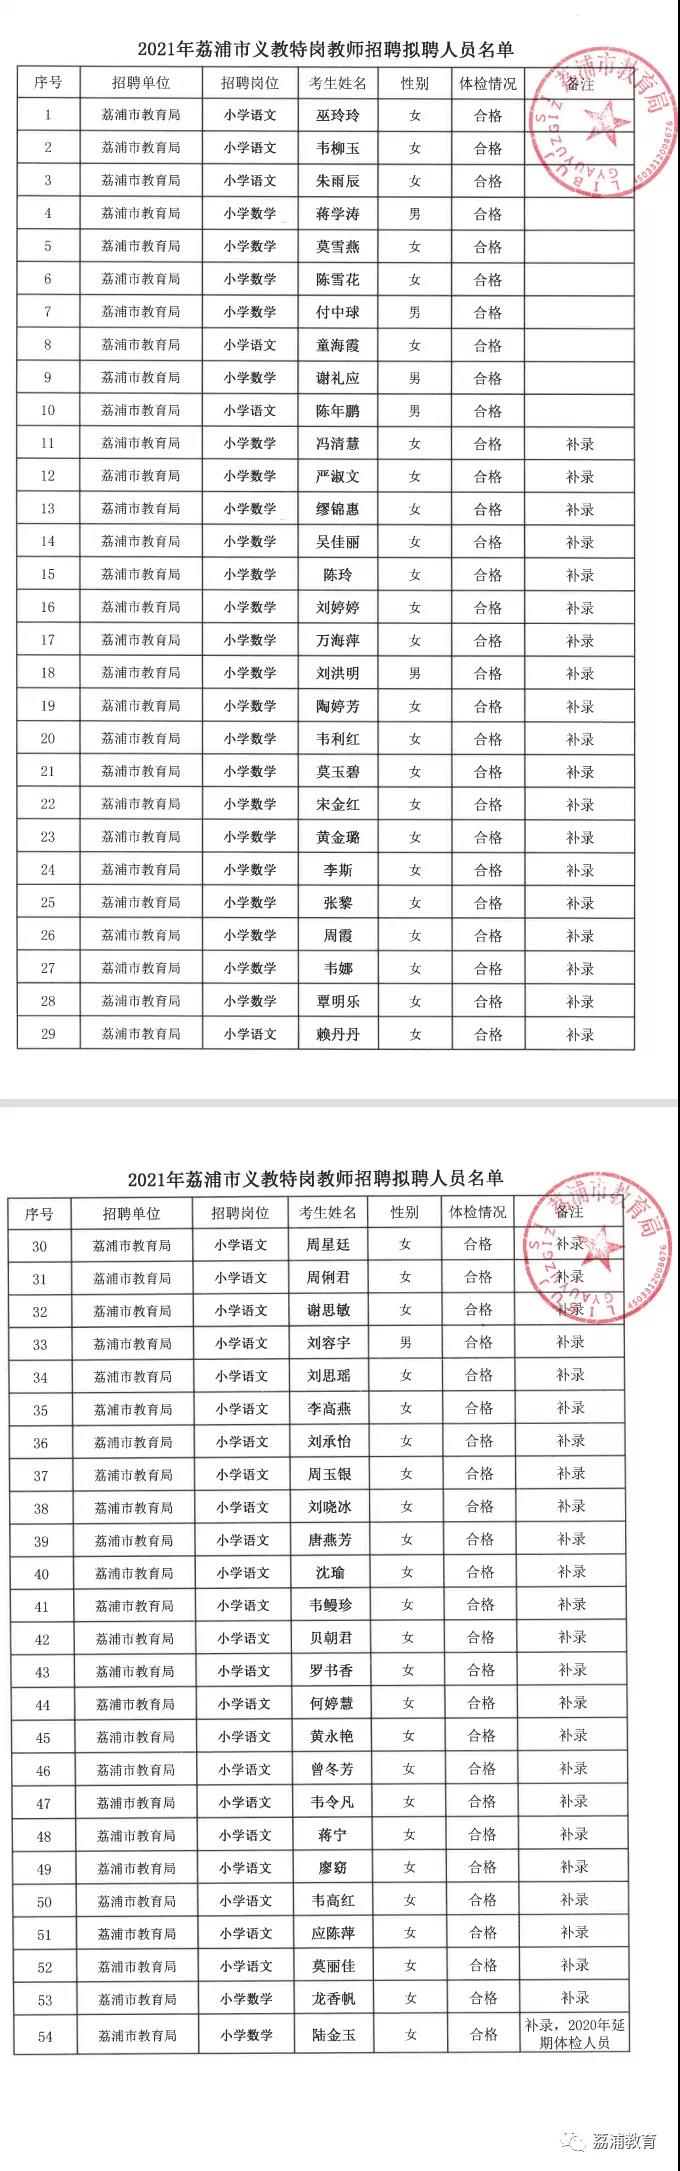 2021年荔浦市义教特岗教师拟聘用名单公示